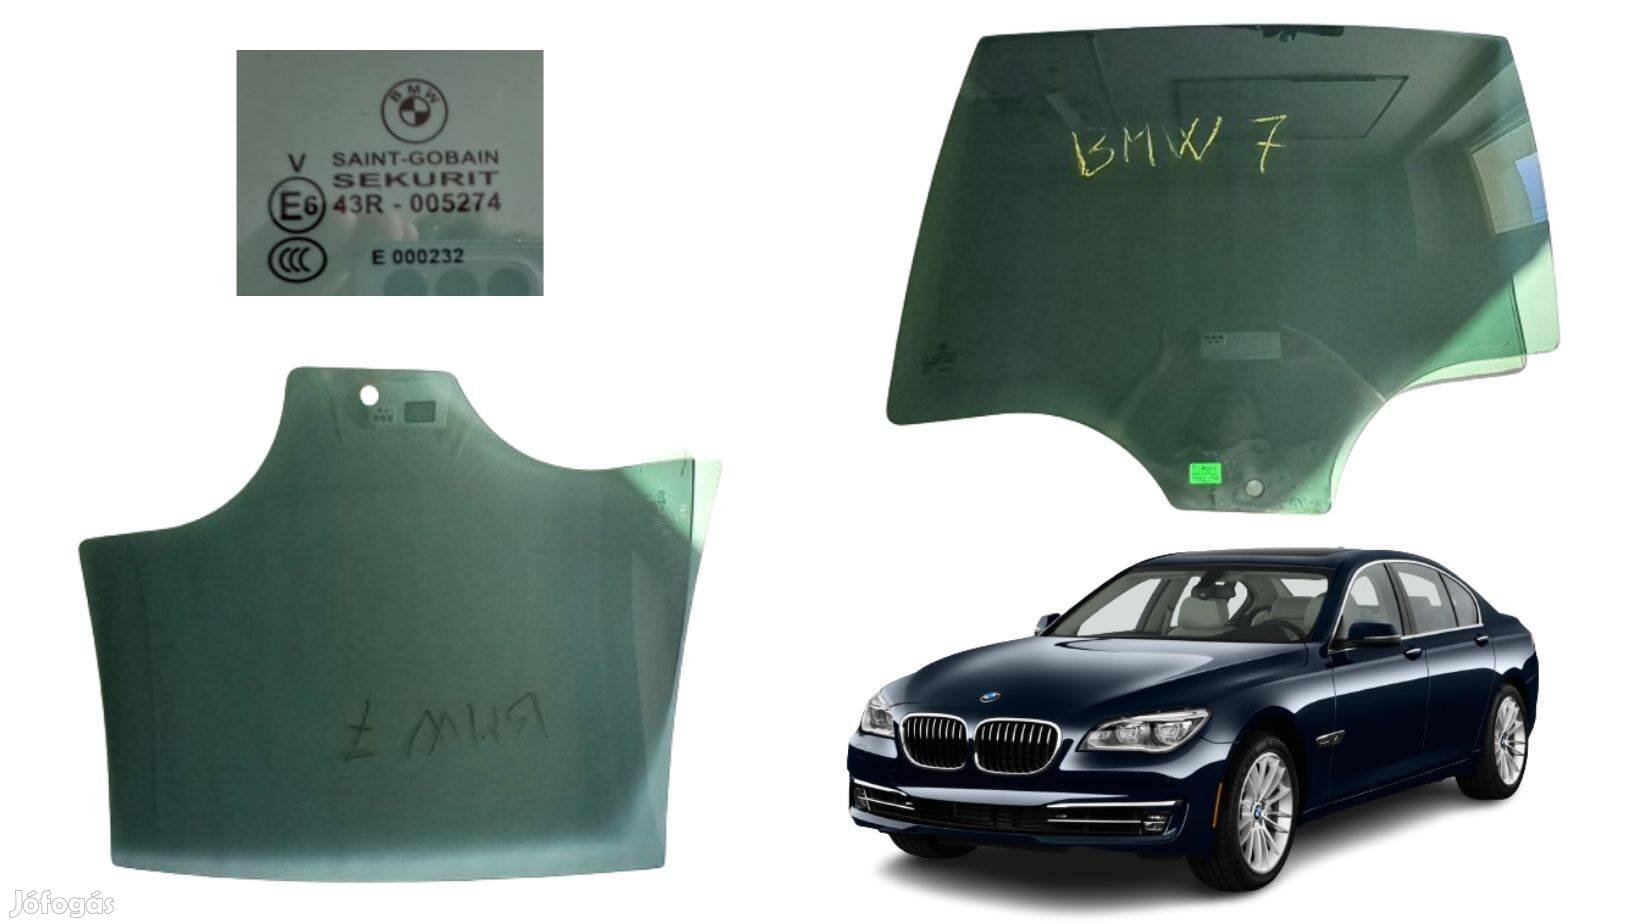 BMW 07-es sorozat F01 bal hátsó ajtóüveg, cikkszám 43R005274